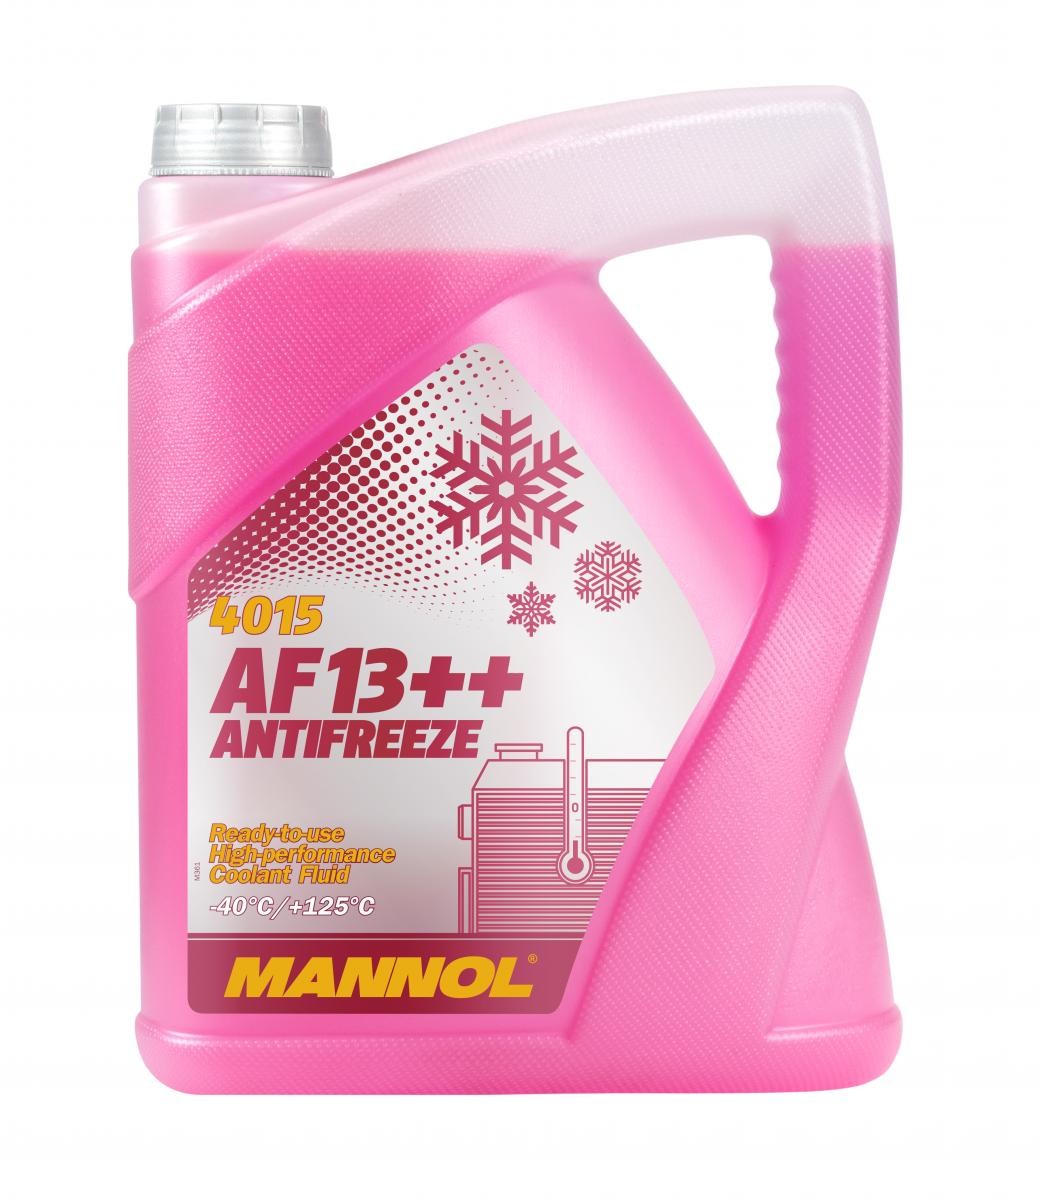 Kupite MANNOL Sredstvo proti zmrzovanju hladilne vode (antifriz) MN4015-5 za IVECO po zmerni ceni